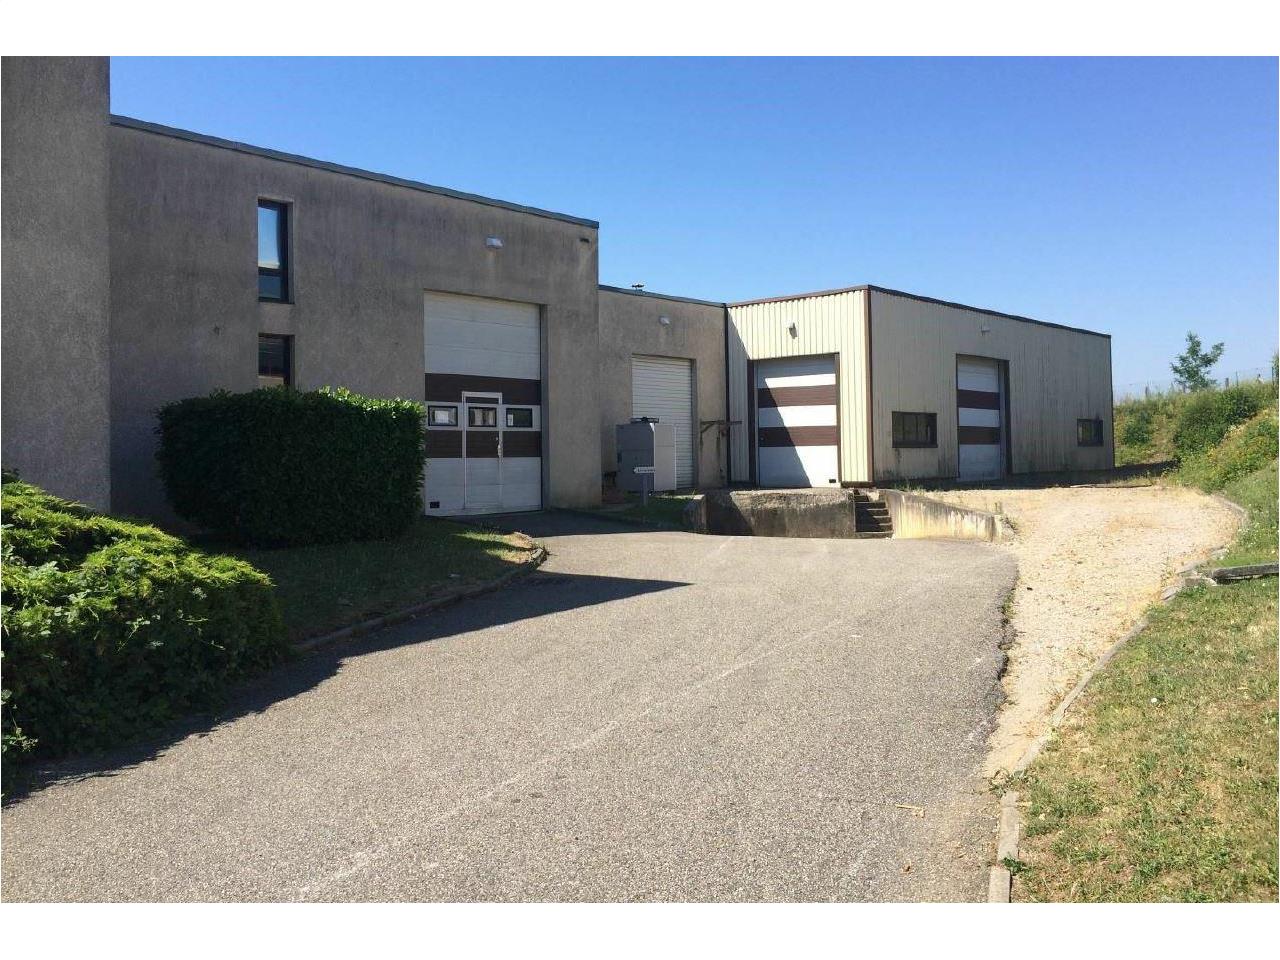 local d'activité à vendre 1233m² Saint-Genis-Laval